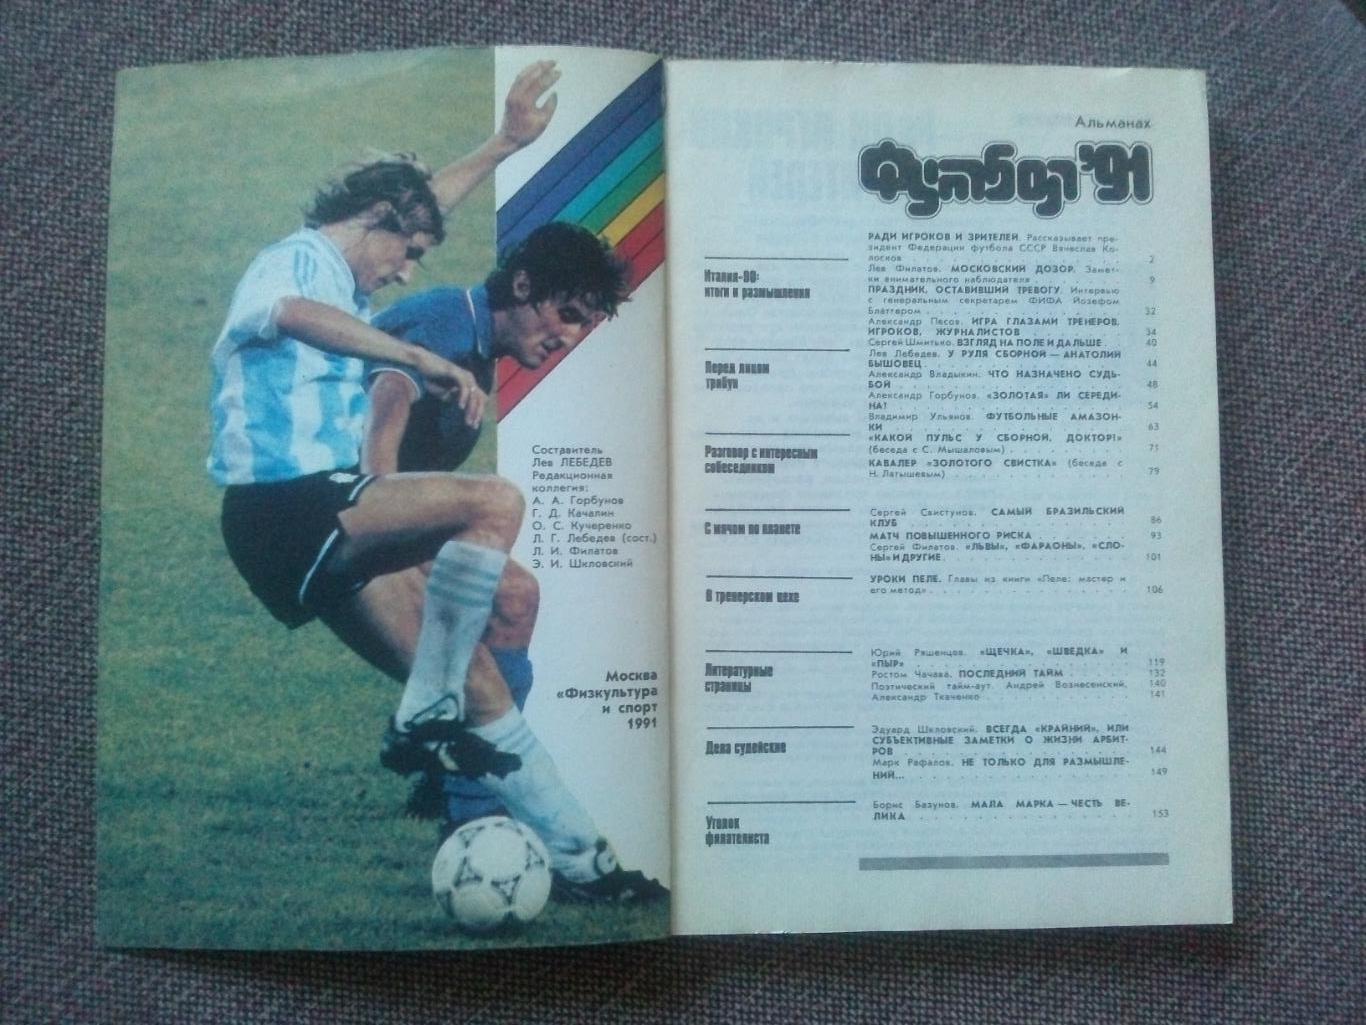 Альманах Футбол - 91 1991 г. Справочник (Спорт)ФиС(чемпионат Мира 1990) 2